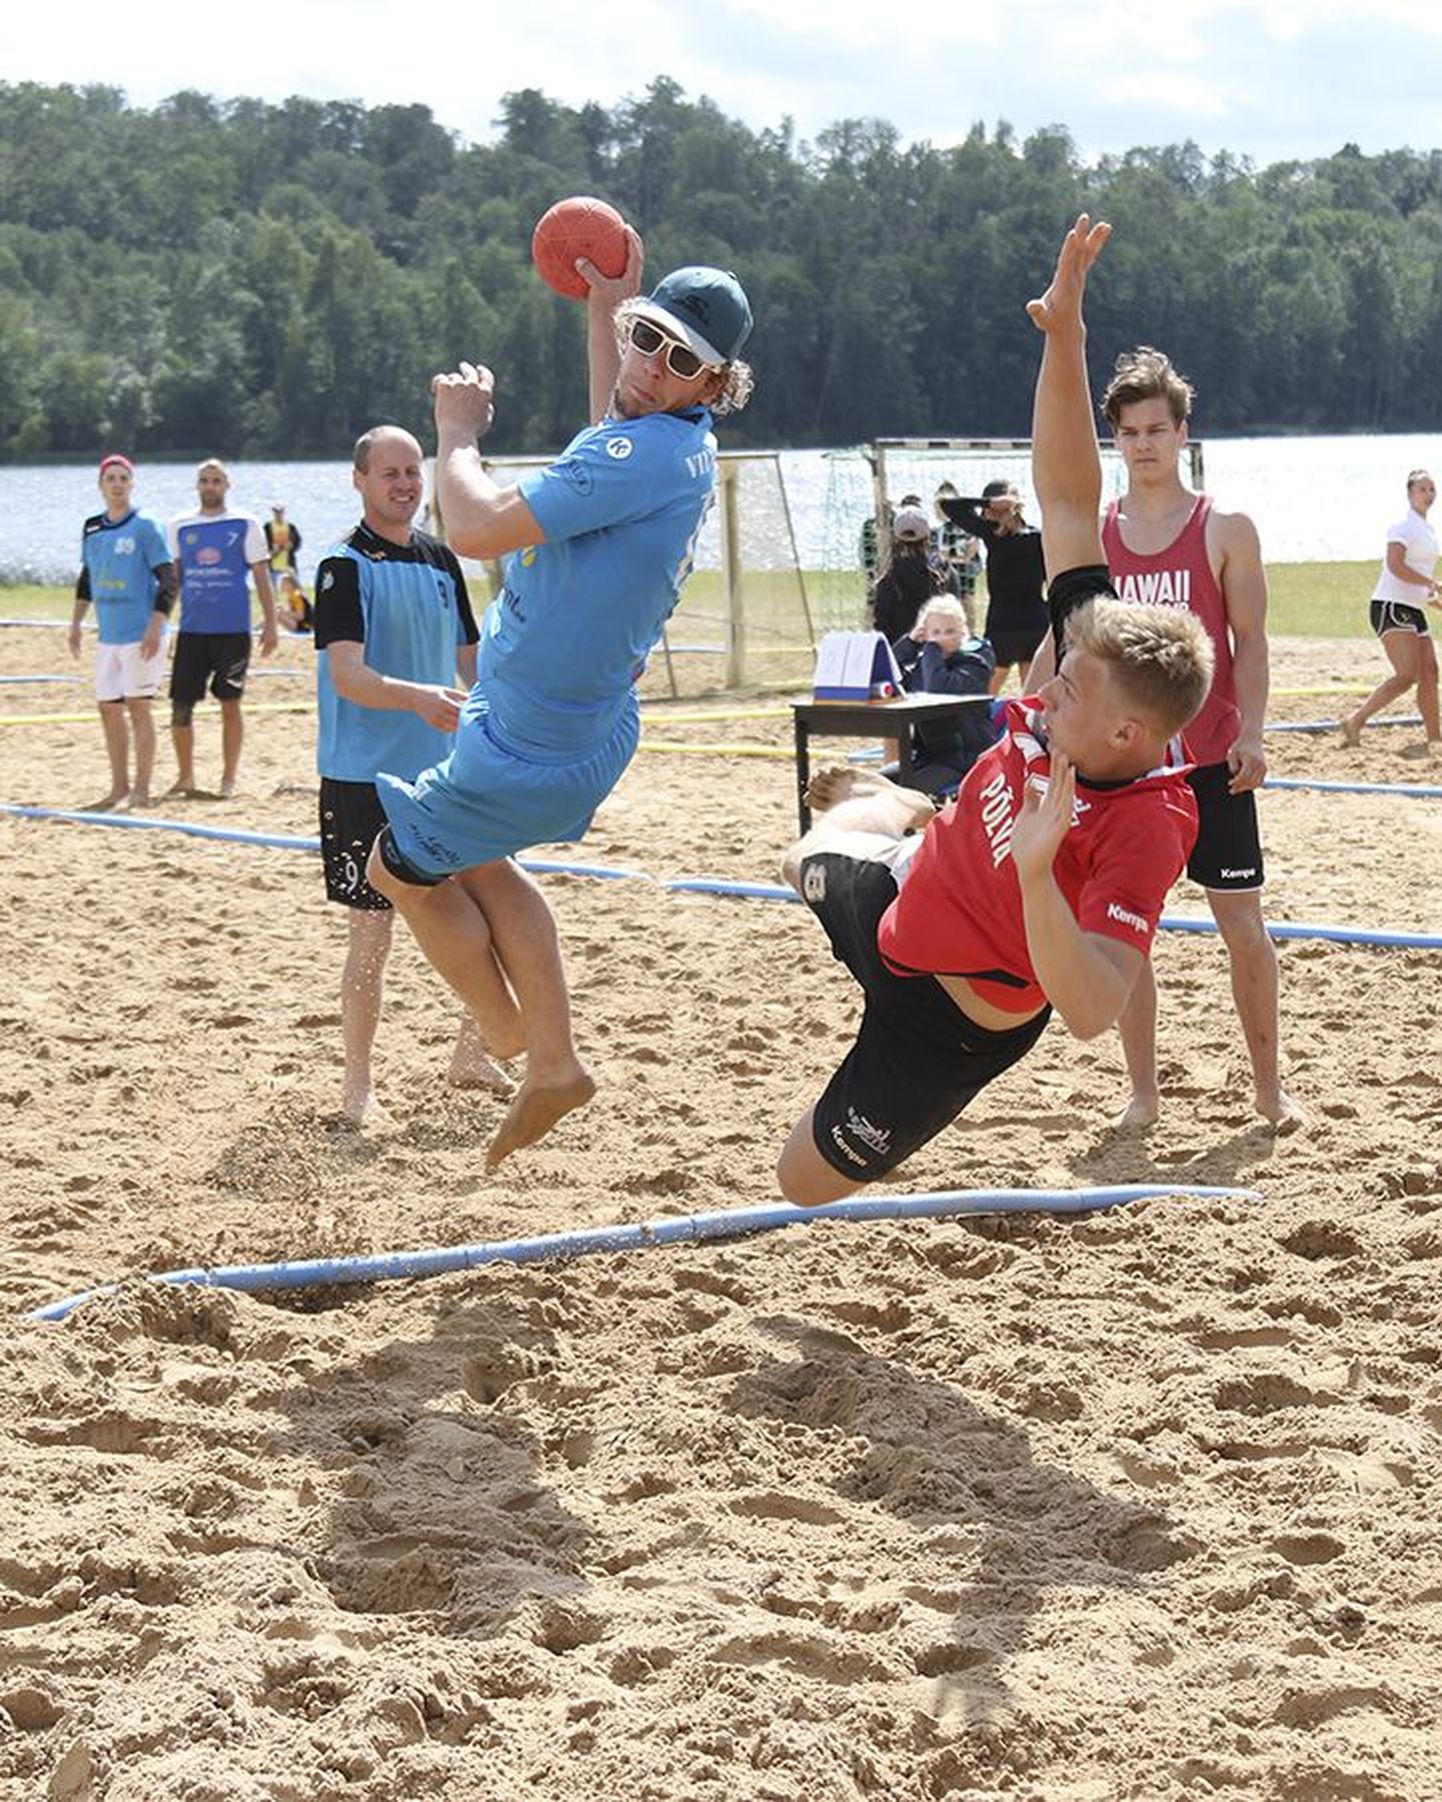 Laupäeval tegi Viljandis rannakäsipalli Eesti meistrivõistluste viimasel etapil eri võistlusgruppides kaasa enam kui 40 võistkonda. Meeste turniiril õnnestus viljandlastel võit koju jätta. Pildil on viskel võitnud meeskonna liige Madis Parik.